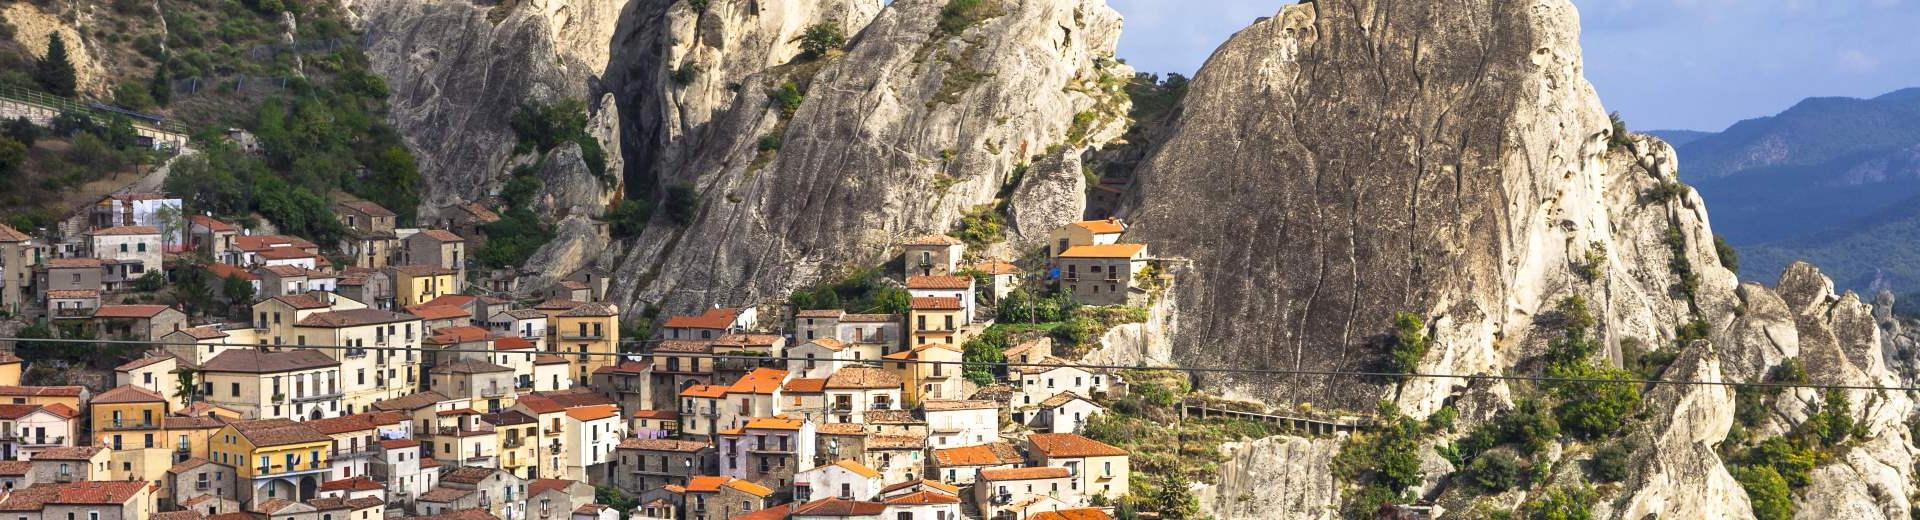 Ferienwohnungen & Ferienhäuser für Urlaub in der Provinz Rieti - Casamundo